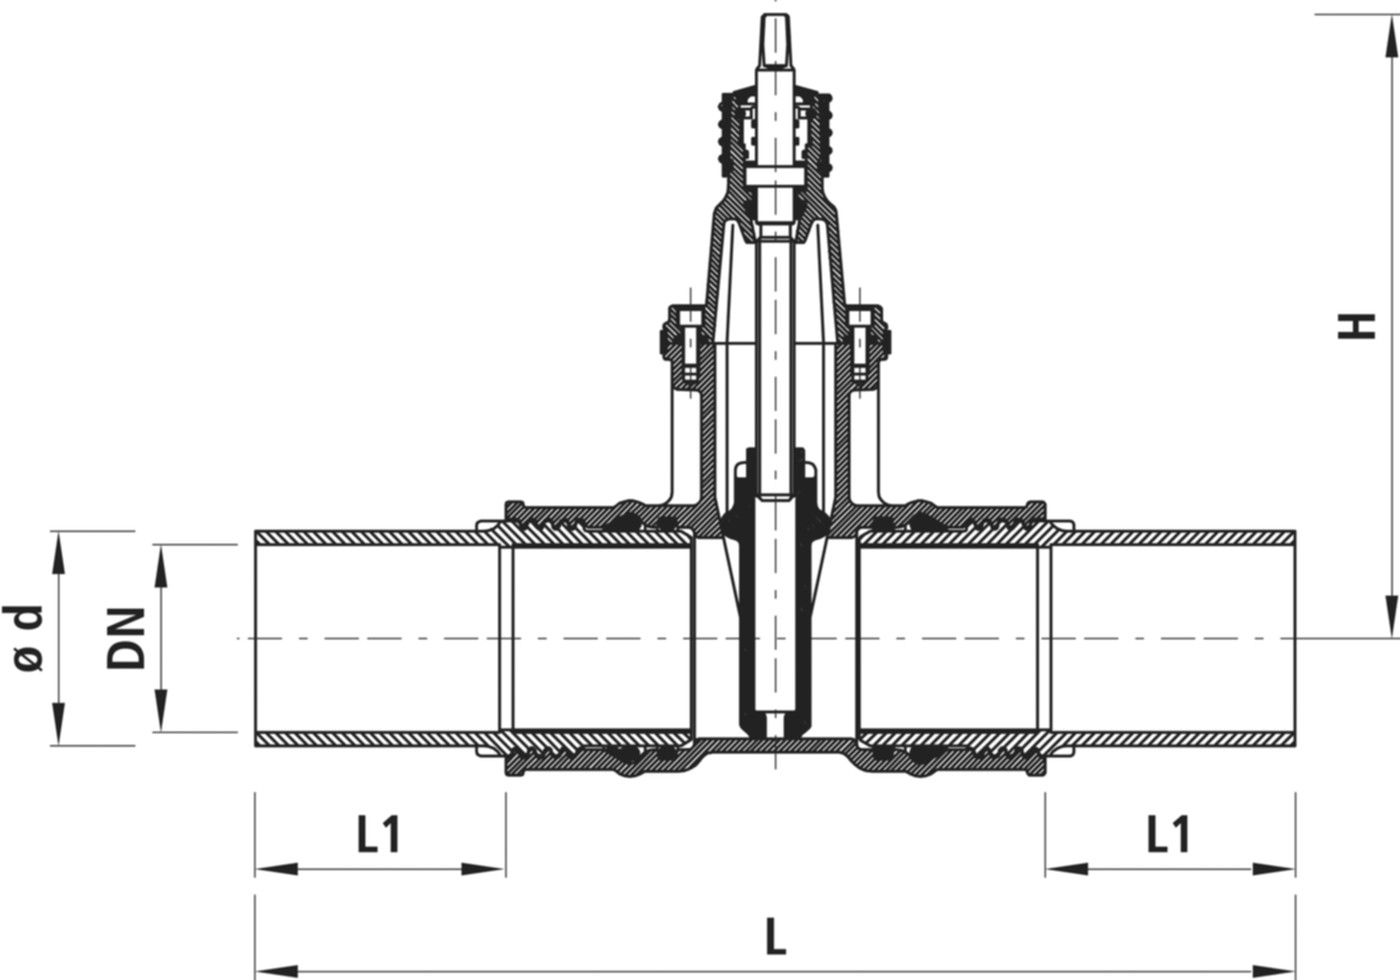 Einschweiss-Schieber für Gas 4815 DN 300 / d 315mm - Hawle Armaturen